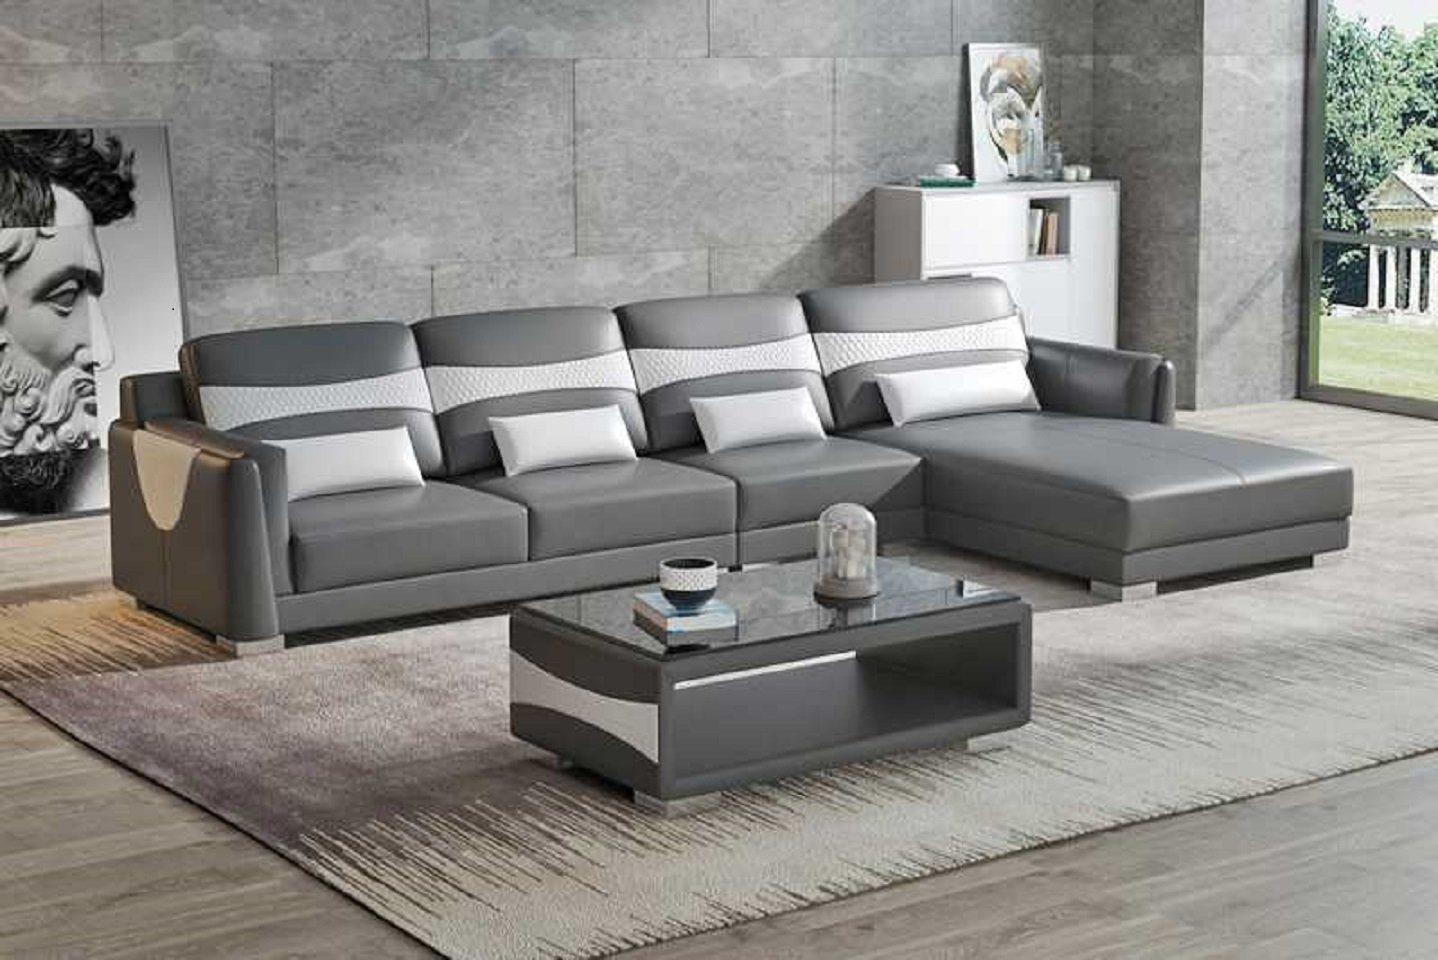 Grau Eckgarnitur Ecksofa Europe JVmoebel Luxus in 3 Teile, Ecksofa L Sofa Wohnzimmer Neu, Made Couch Liege Form